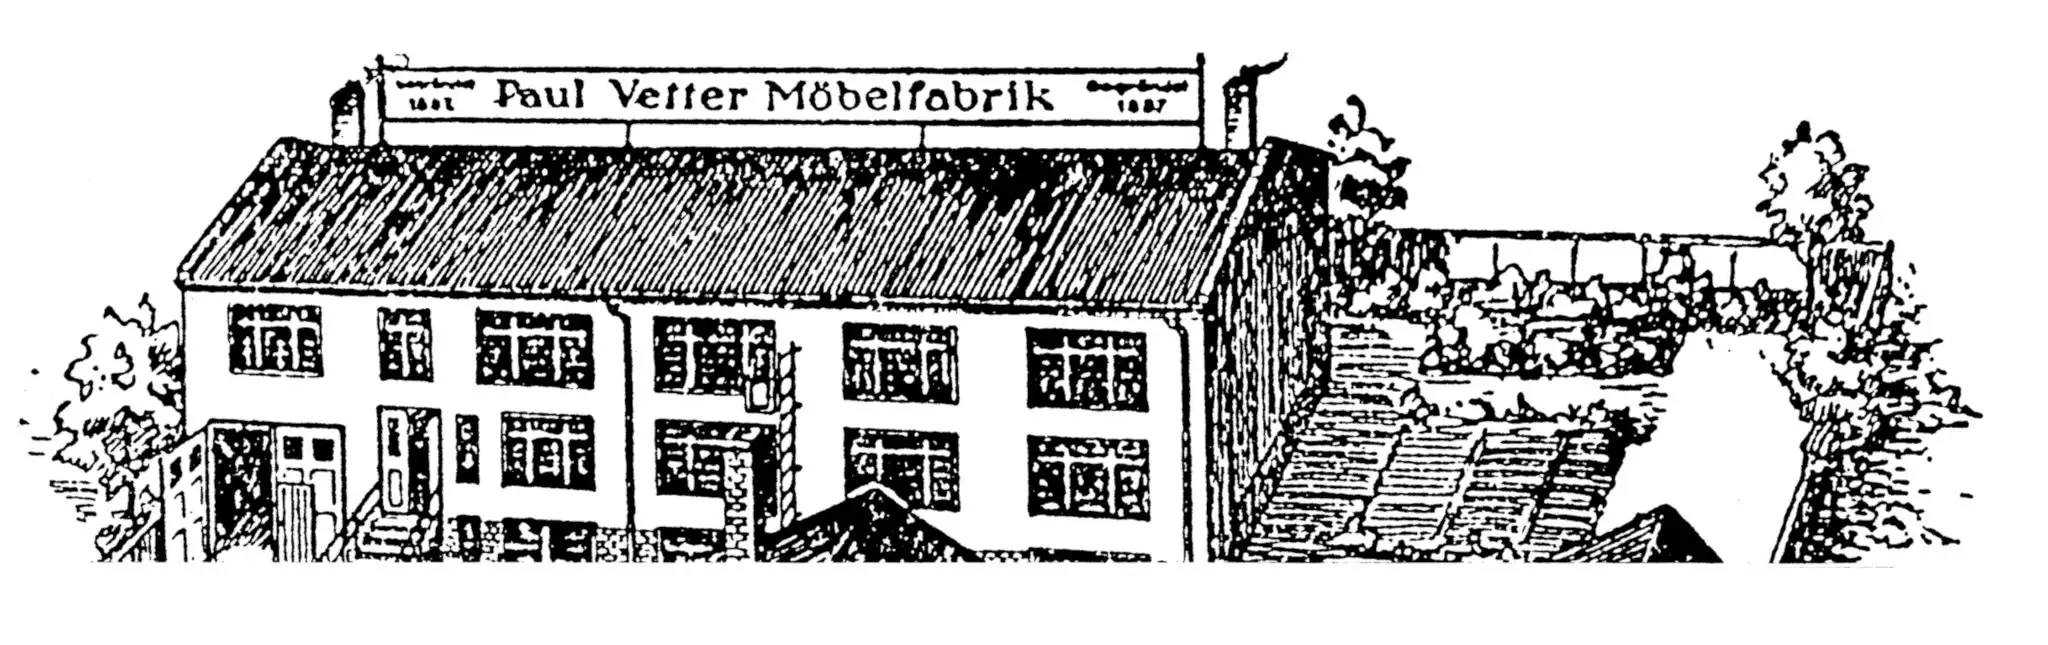  Möbelfragrik Paul Vetter in Nowawes, um 1900